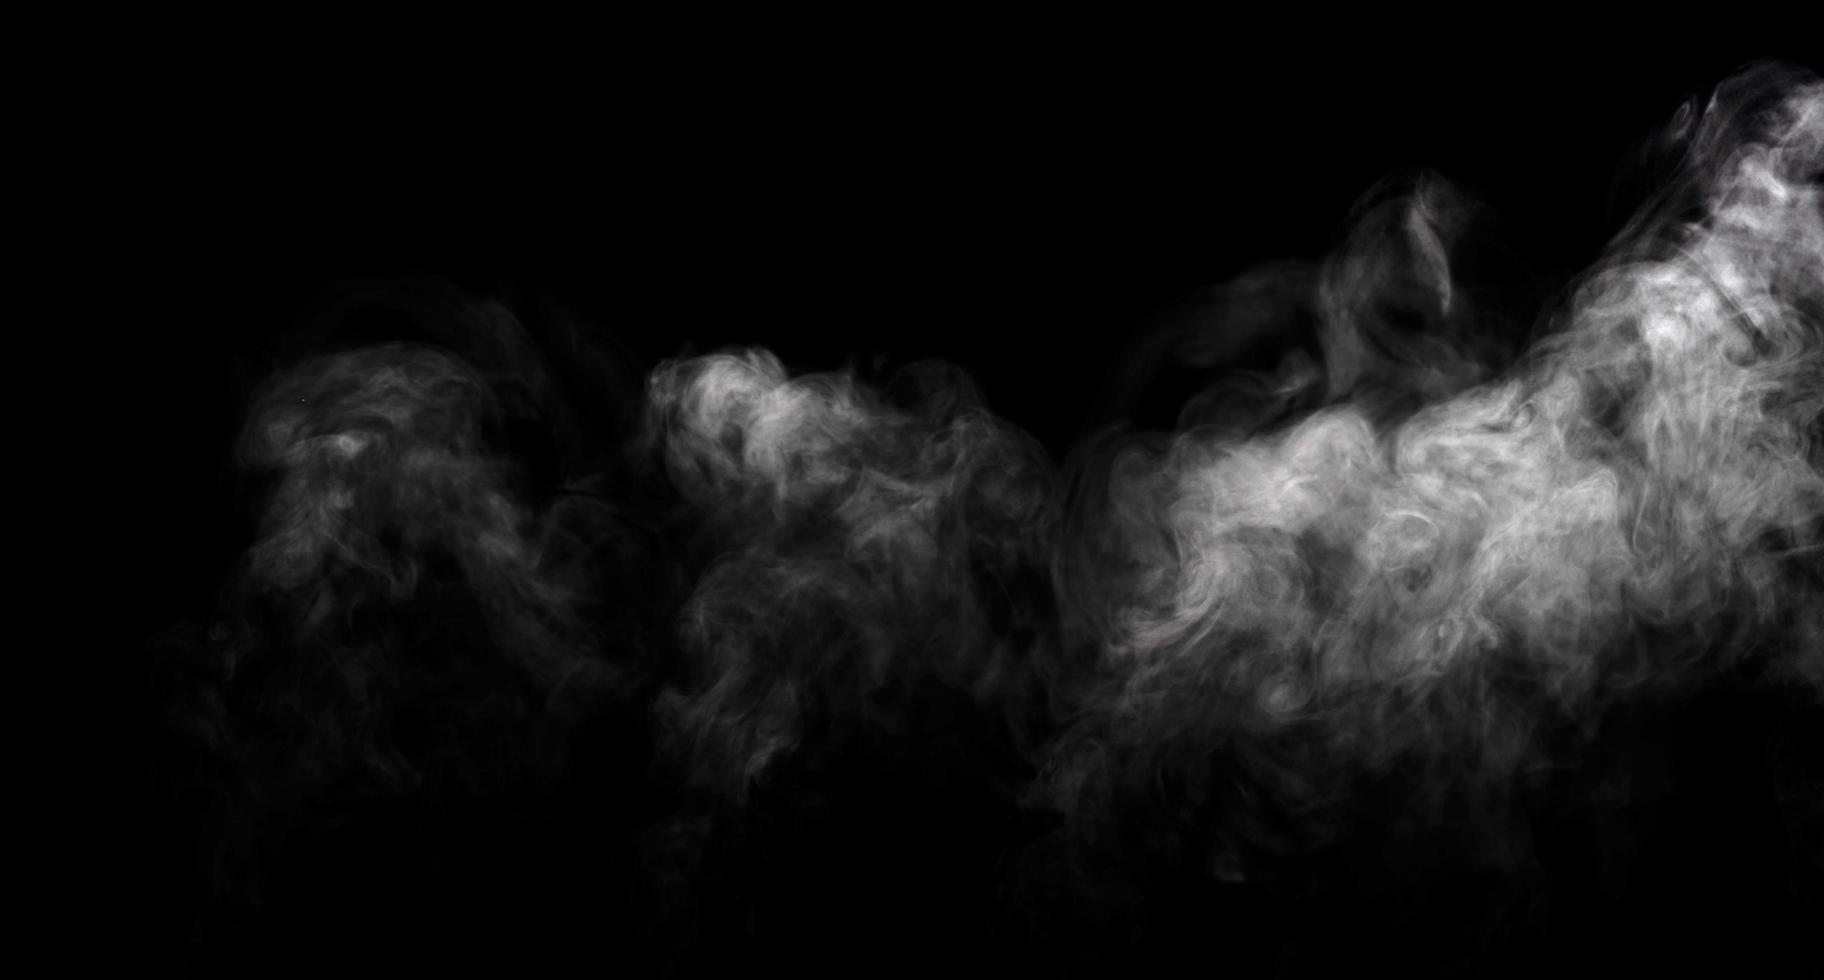 abstraktes Pulver oder Rauch isoliert auf schwarzem Hintergrund foto